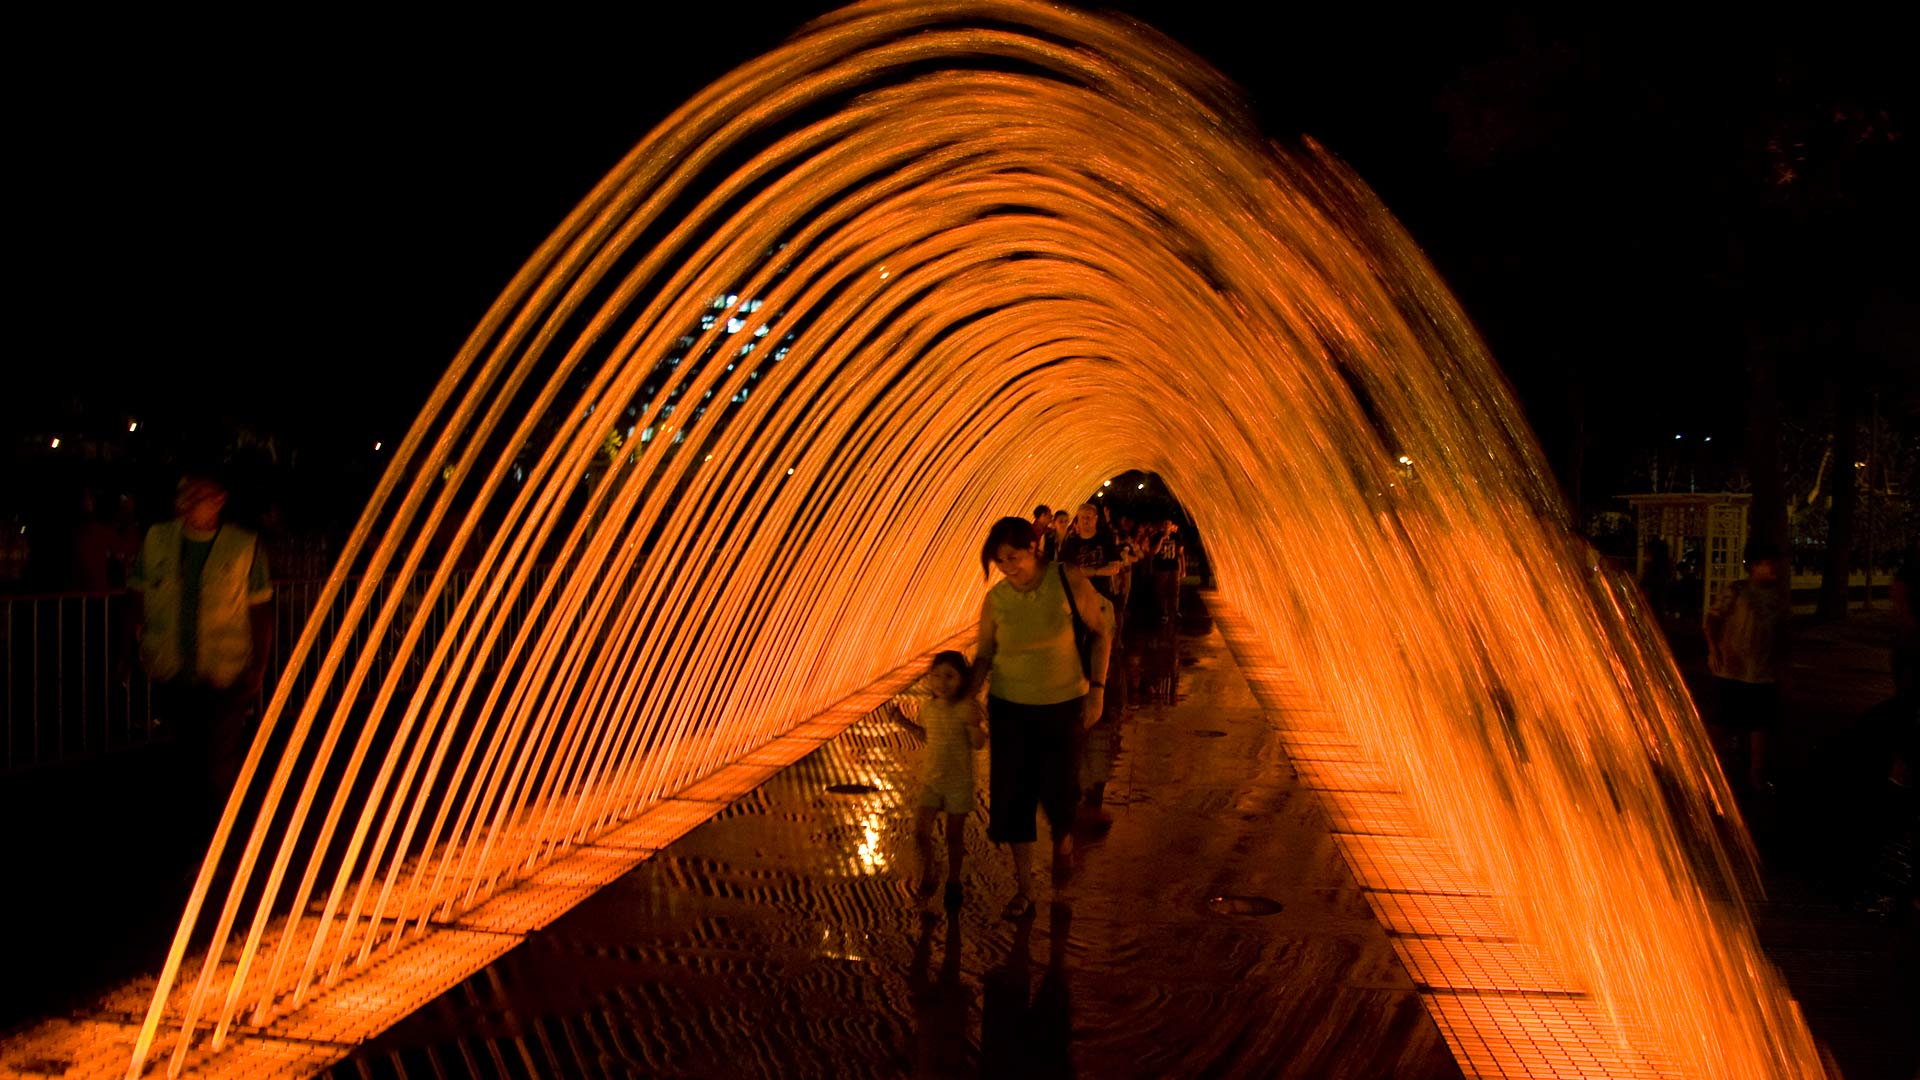 People walking through the Fuente Túnel de la Sorpresas (Tunnel of Surprises Fountain) in Parque de la Reserva at night, Lima